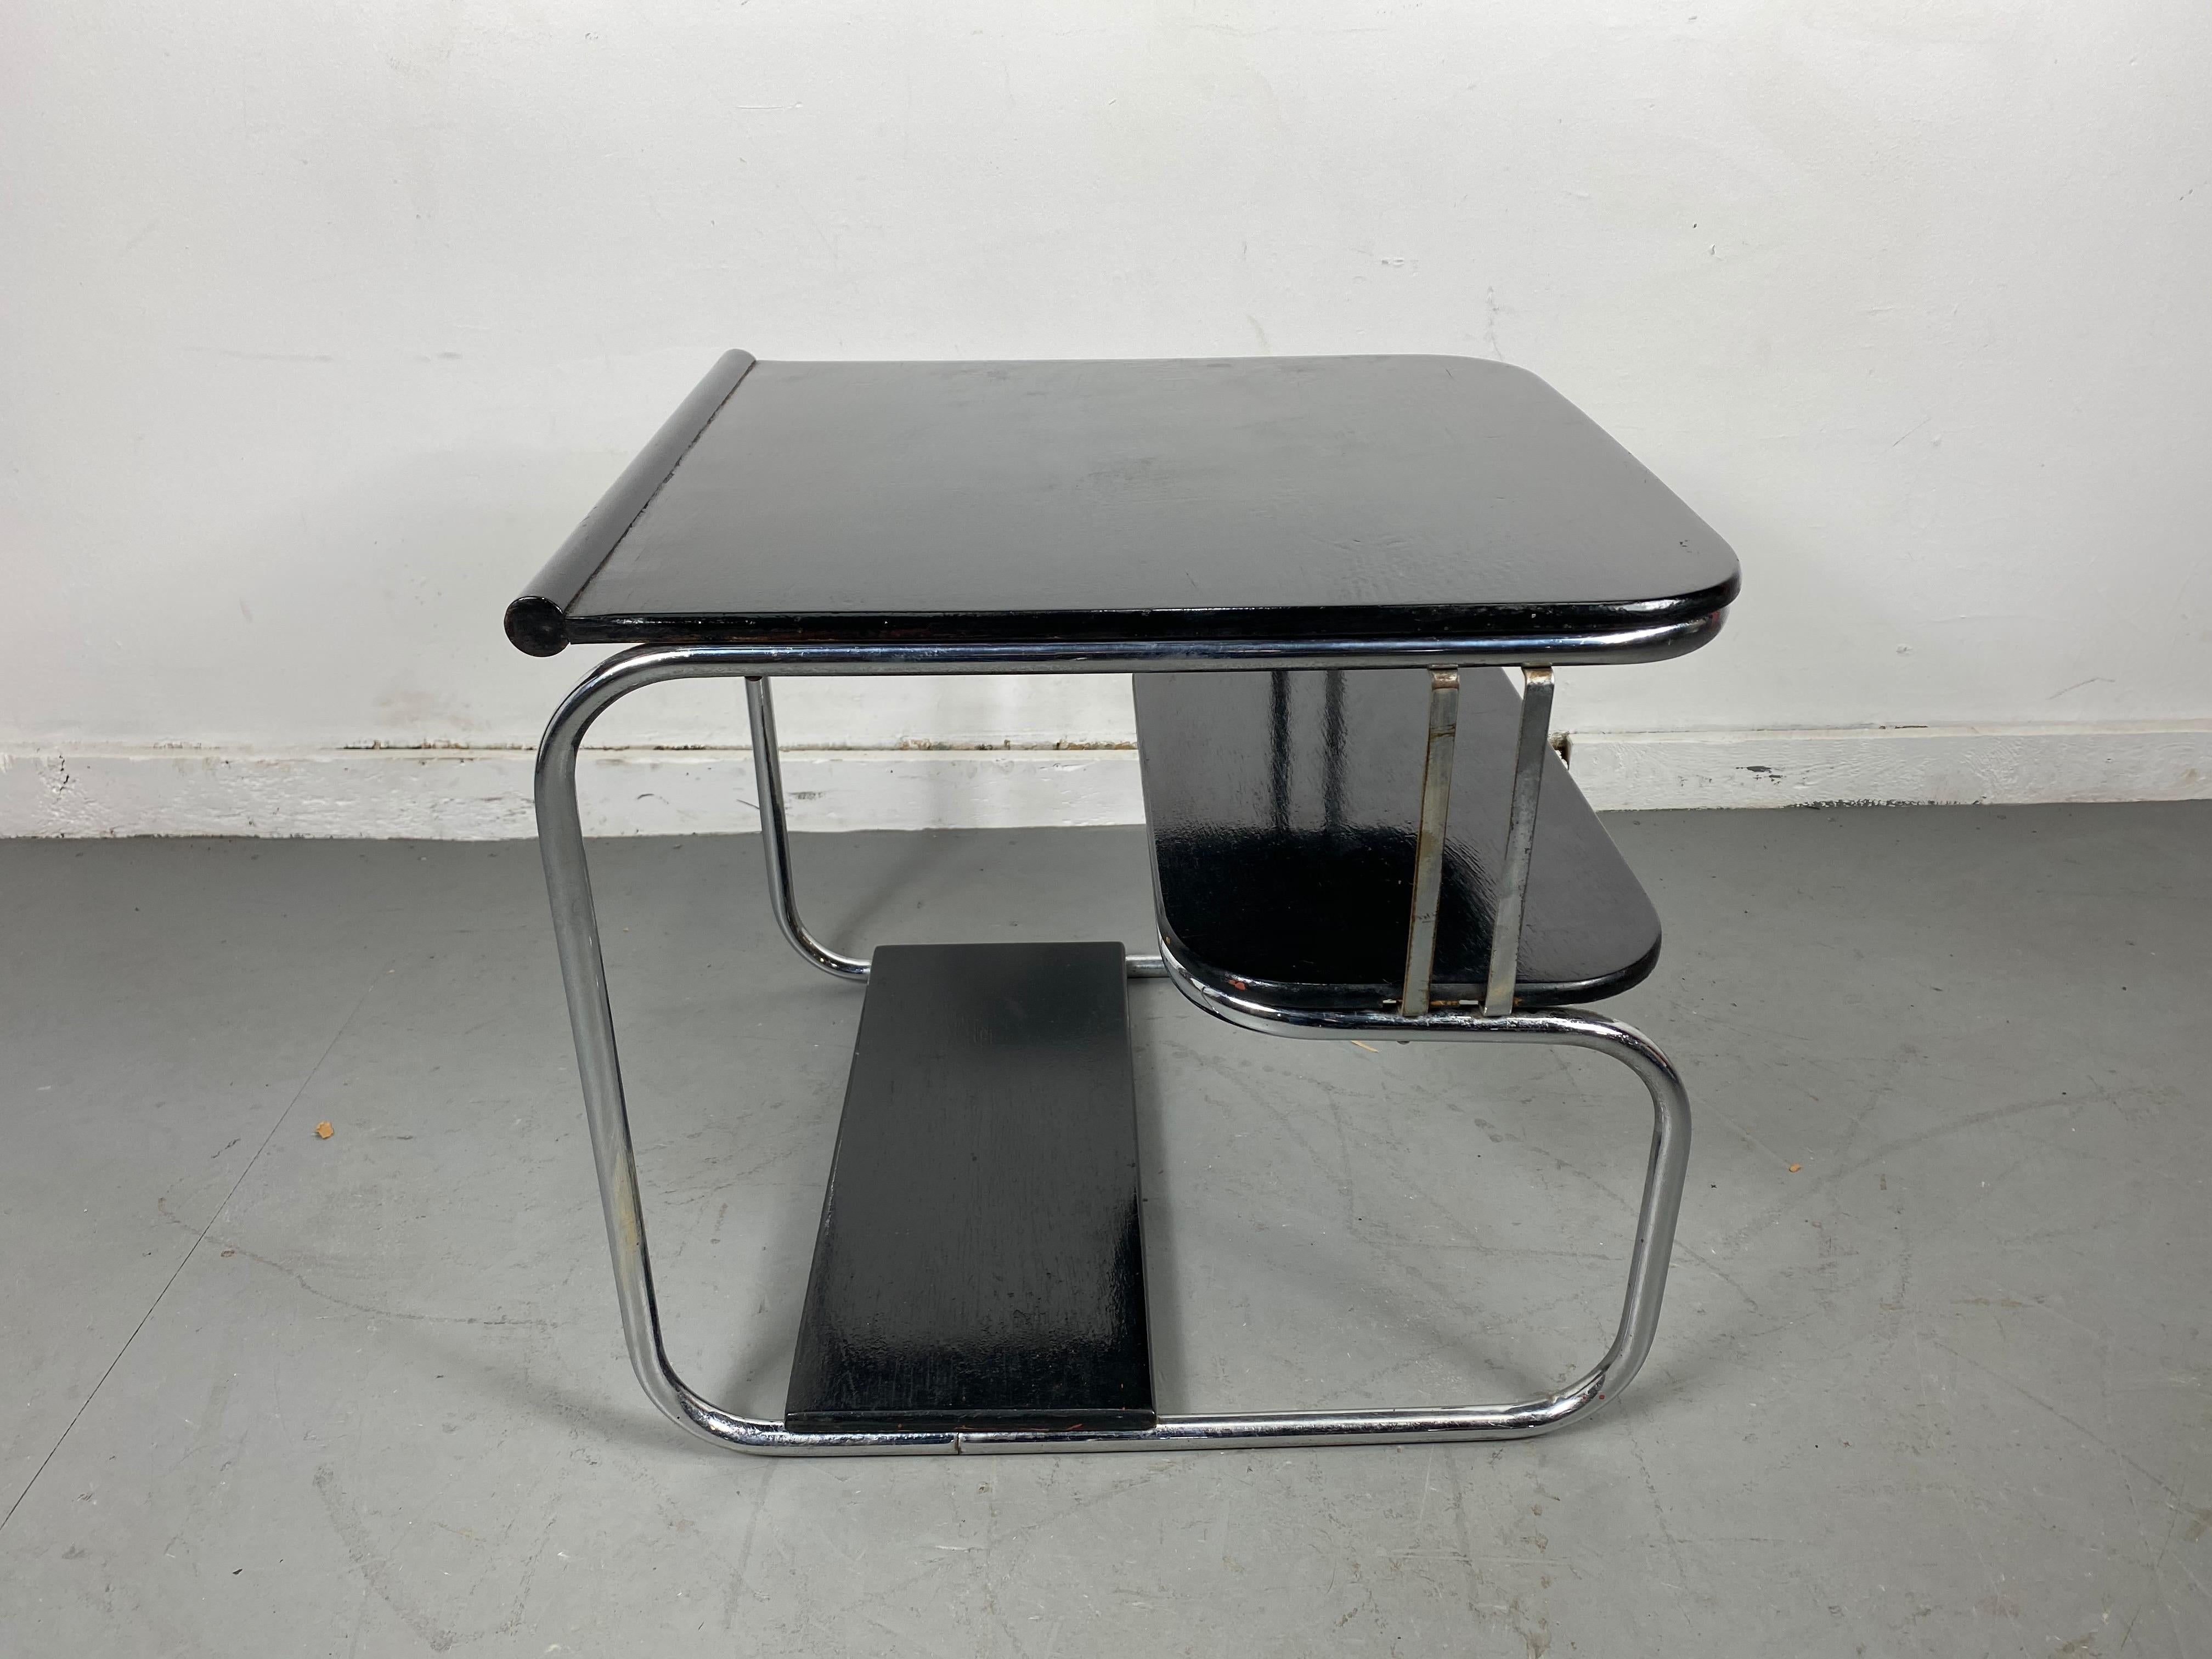 Rare table Art Déco/Machine des années 30, noir et chrome, KEM Weber, jamais vue en personne, seulement dans le catalogue KEM Weber des années 30, design étonnant et inhabituel.